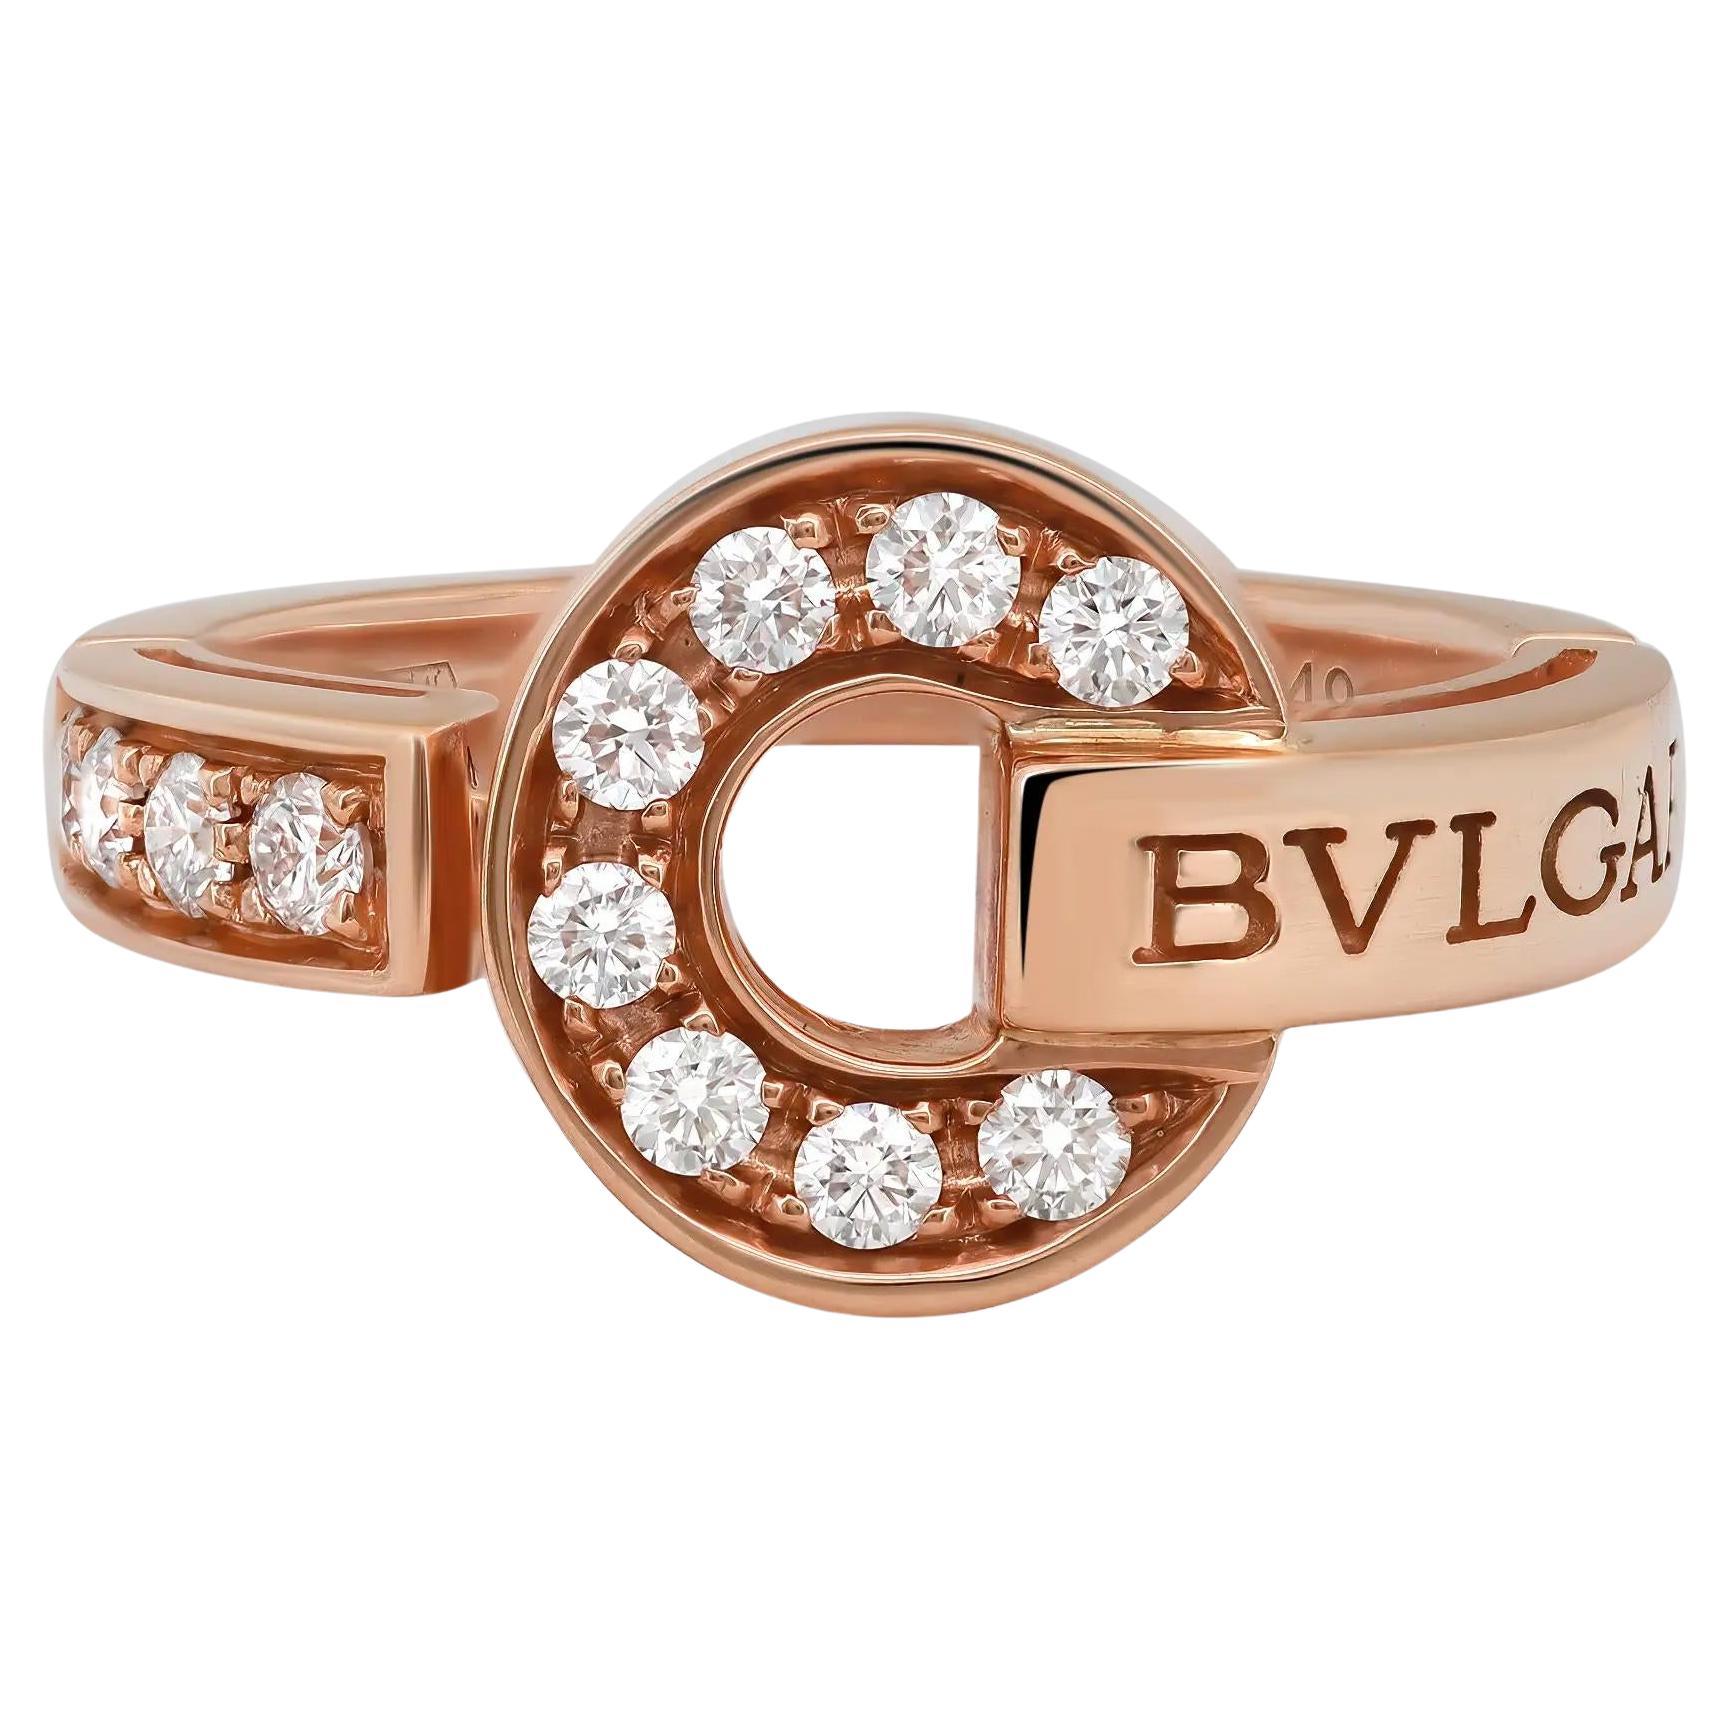 Bvlgari Bvlgari Diamond Ring 18K Rose Gold Size 49 US 5 For Sale